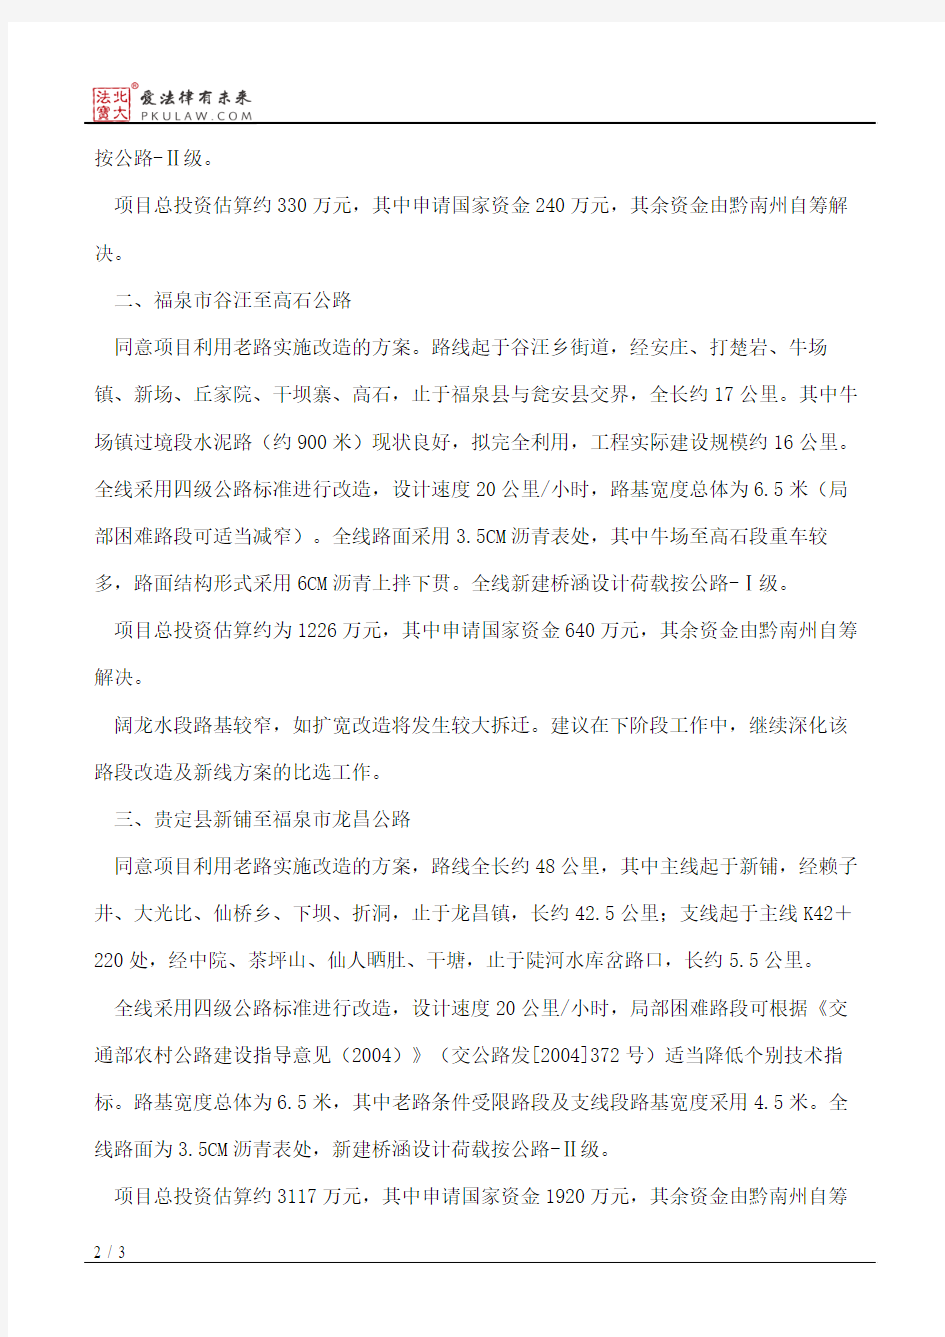 贵州省发展和改革委员会关于黔南州都匀市绿茵湖至甘塘等十四条通